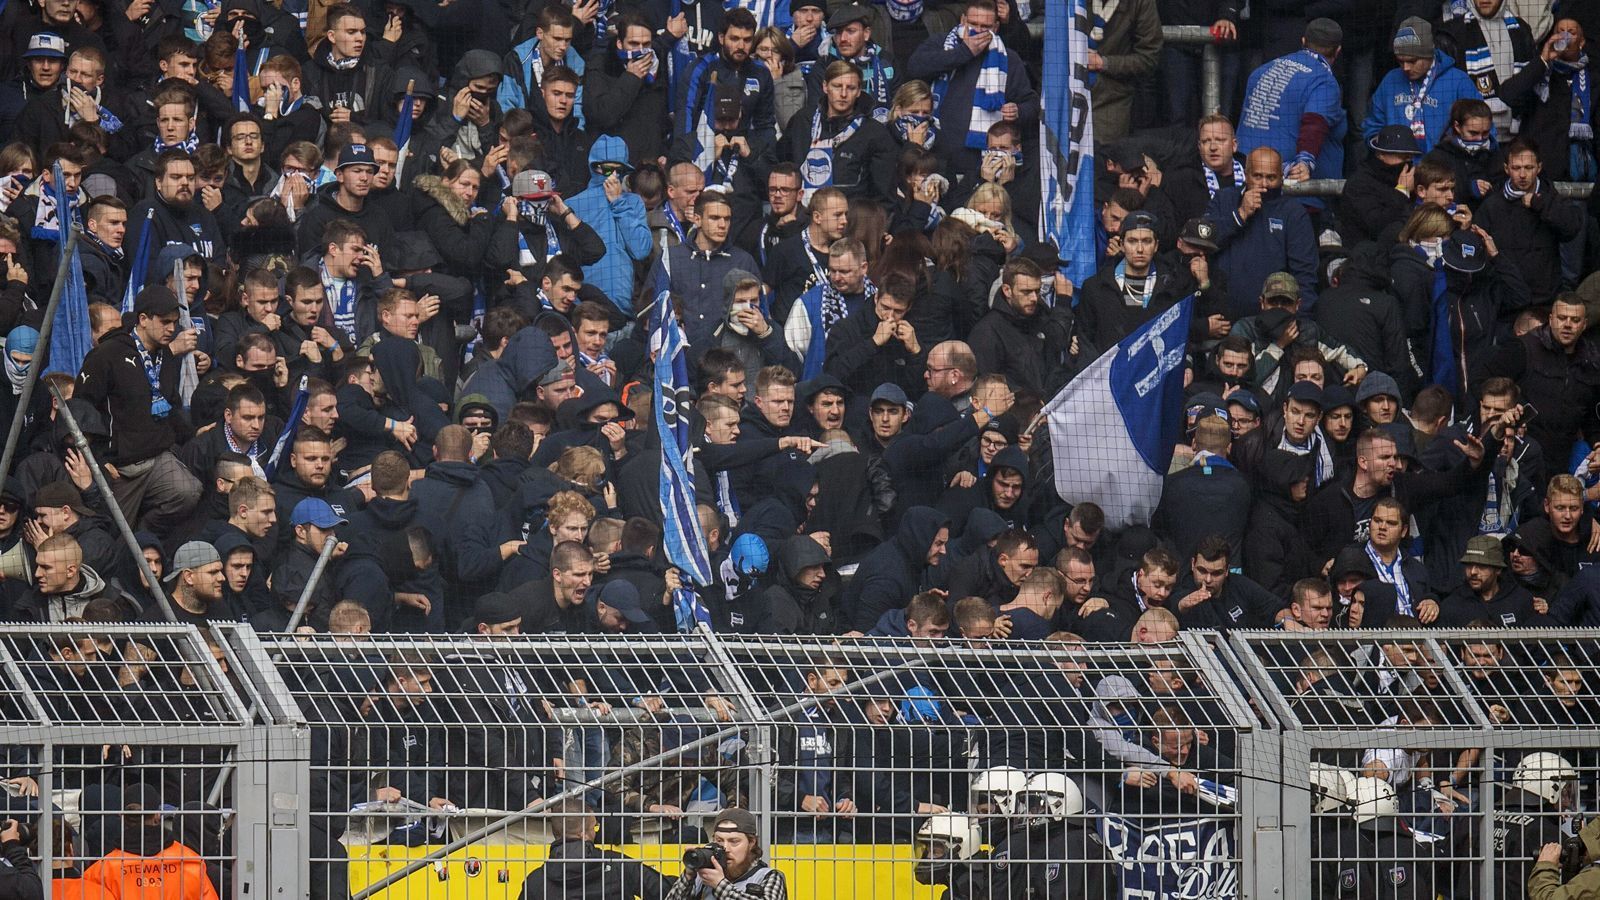 
                <strong>Ausschreitung im Hertha-Block bei Auswärtsspiel in Dortmund</strong><br>
                Der Auslöser des anschließenden Skandals ist aber laut Augenzeugen, dass die Polizei eine Choreografie des Hertha-Anhangs beendet ...
              